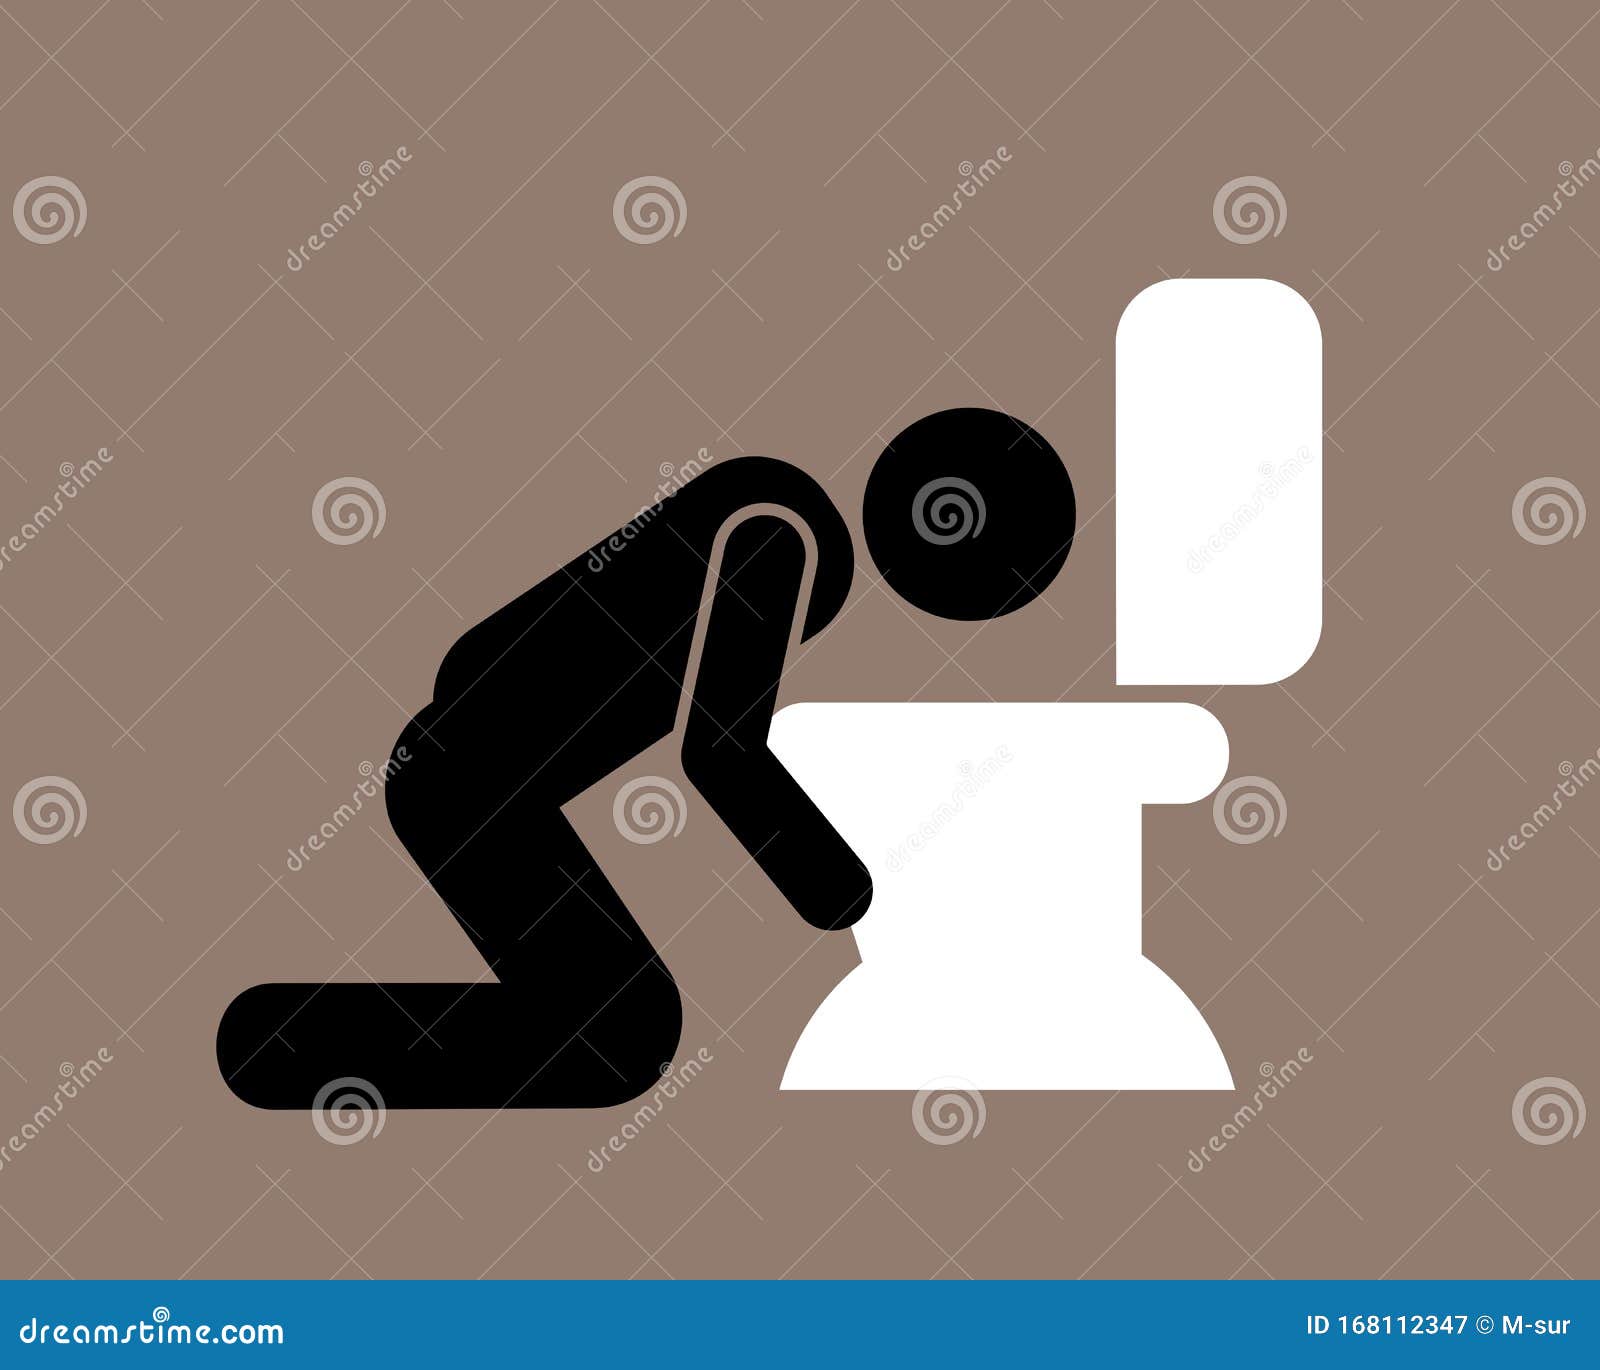 l-homme-vomit-dans-la-cuvette-de-toilettes-et-wc-naus%C3%A9es-maladie-indisposition-en-raison-probl%C3%A8mes-sant%C3%A9-ou-%C3%A9tant-bues-168112347.jpg